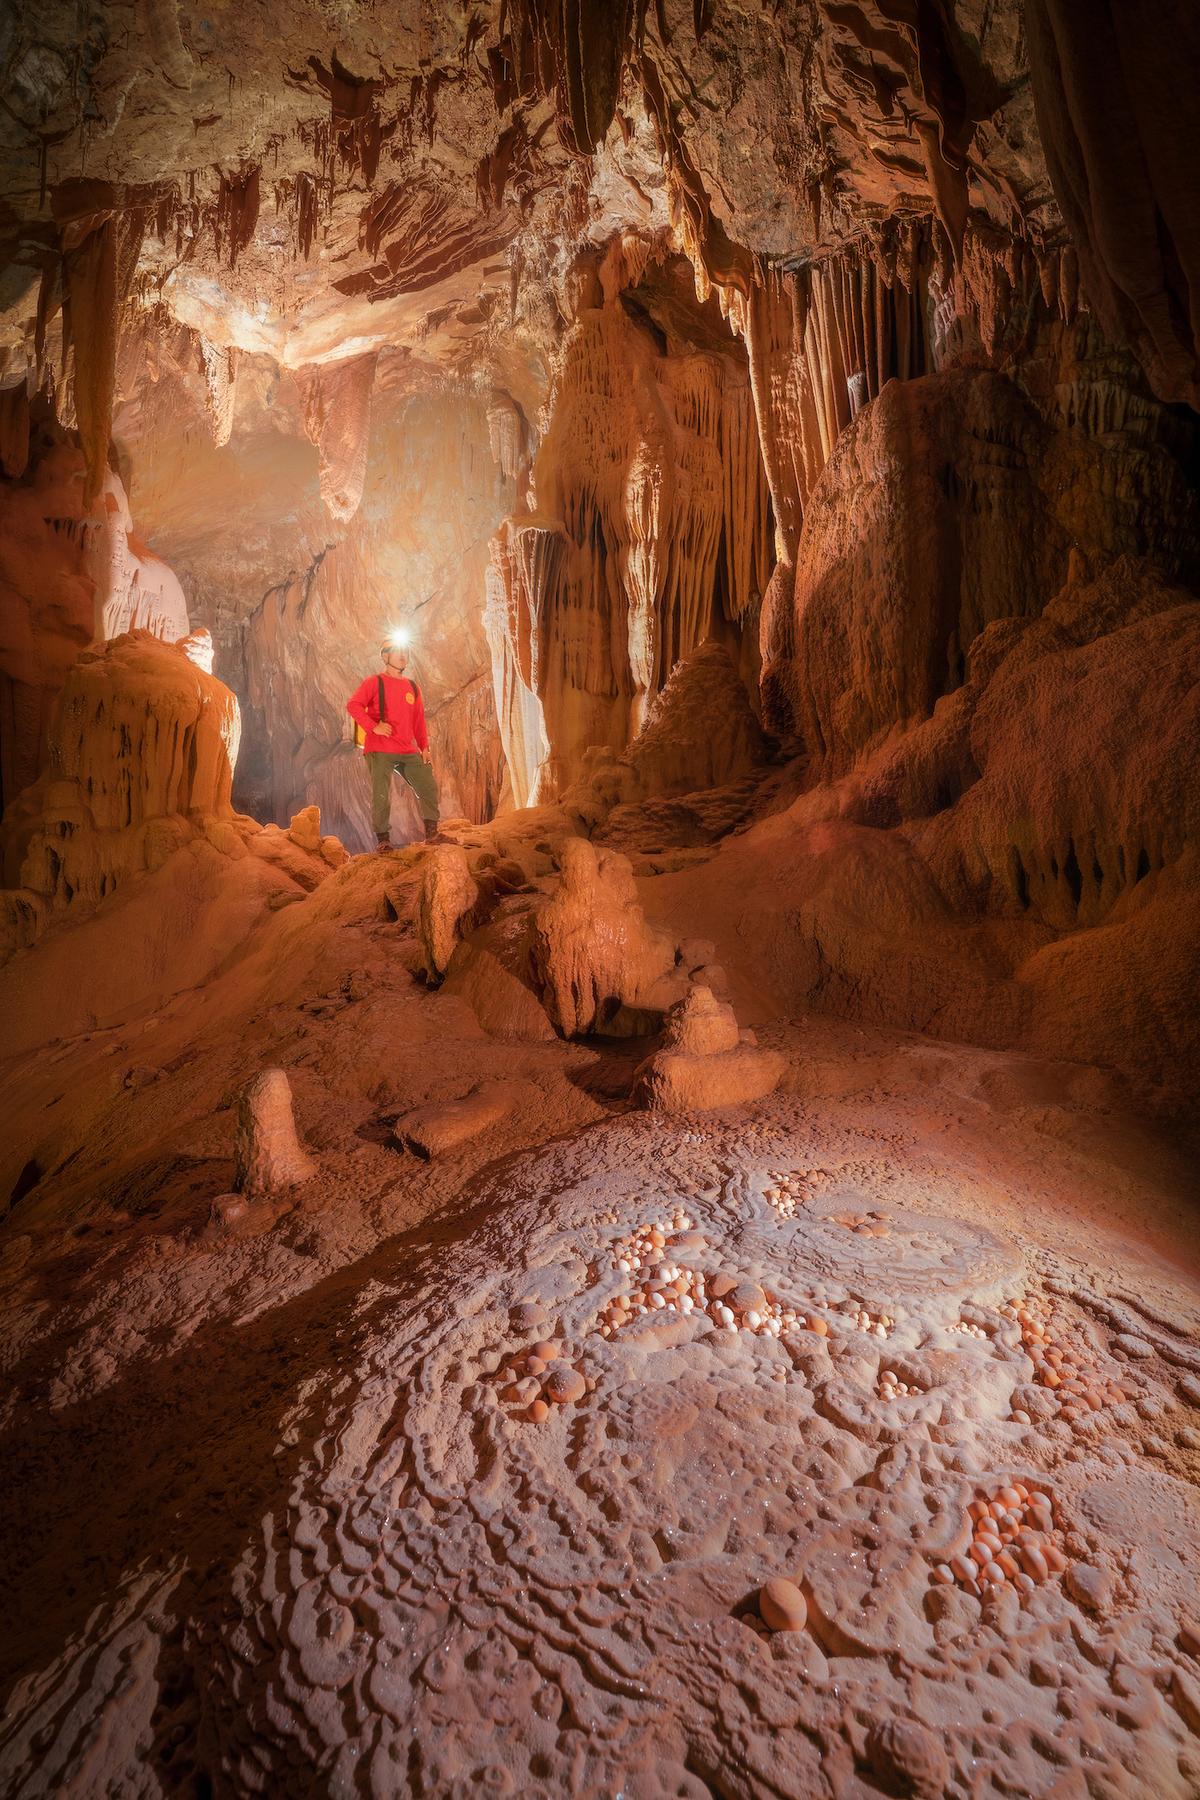 An explorer inside Hung Cave. (Courtesy of Cao Ky Nhan via Jungle Boss Tours)